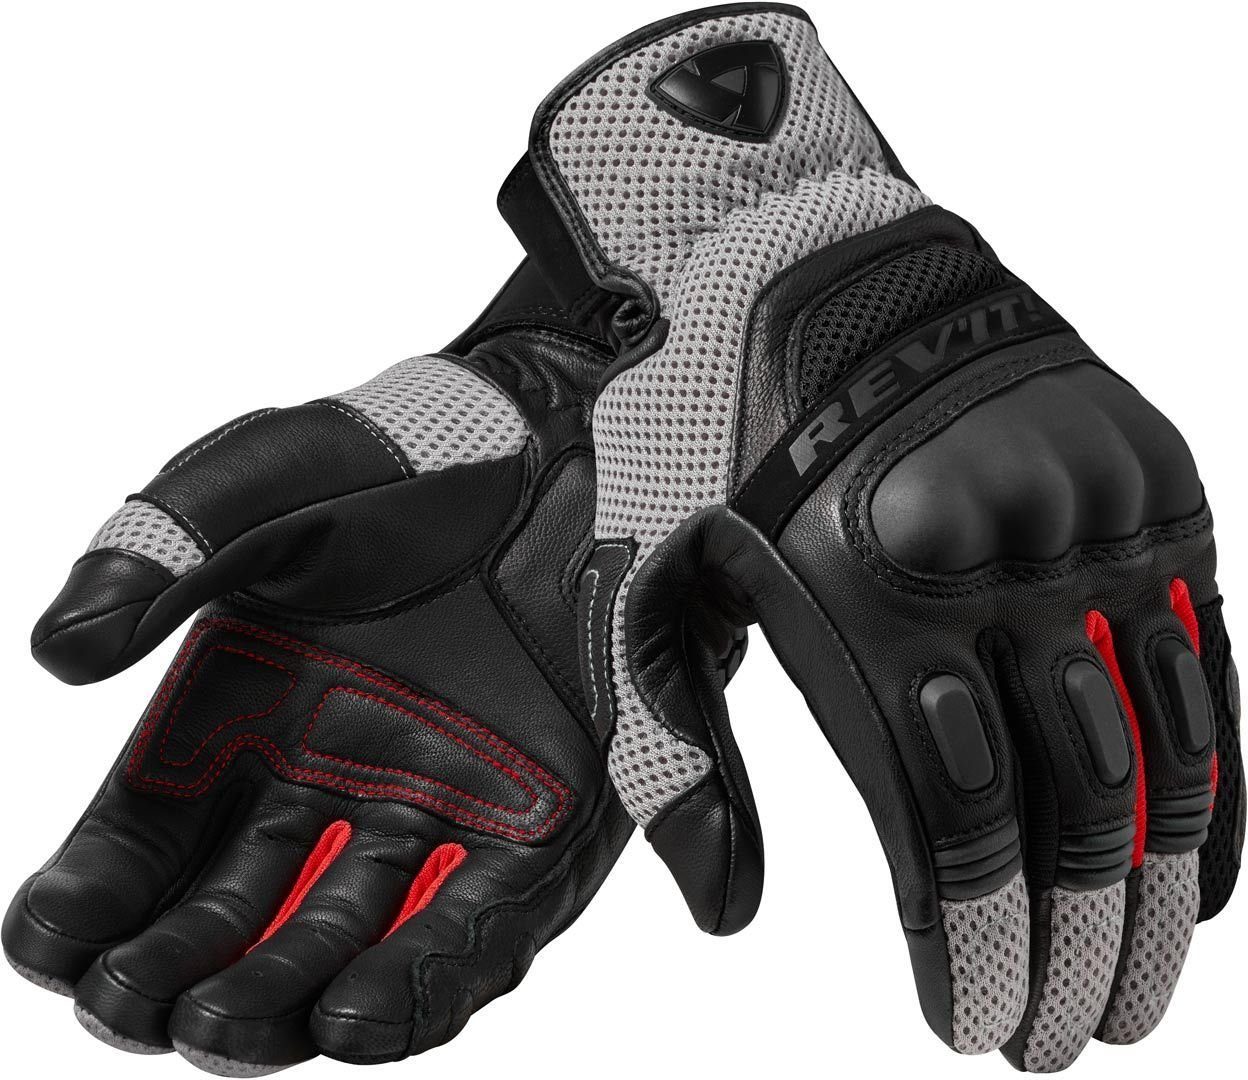 Handschuhe Black/Red 3 Motocross Motorradhandschuhe Dirt Revit